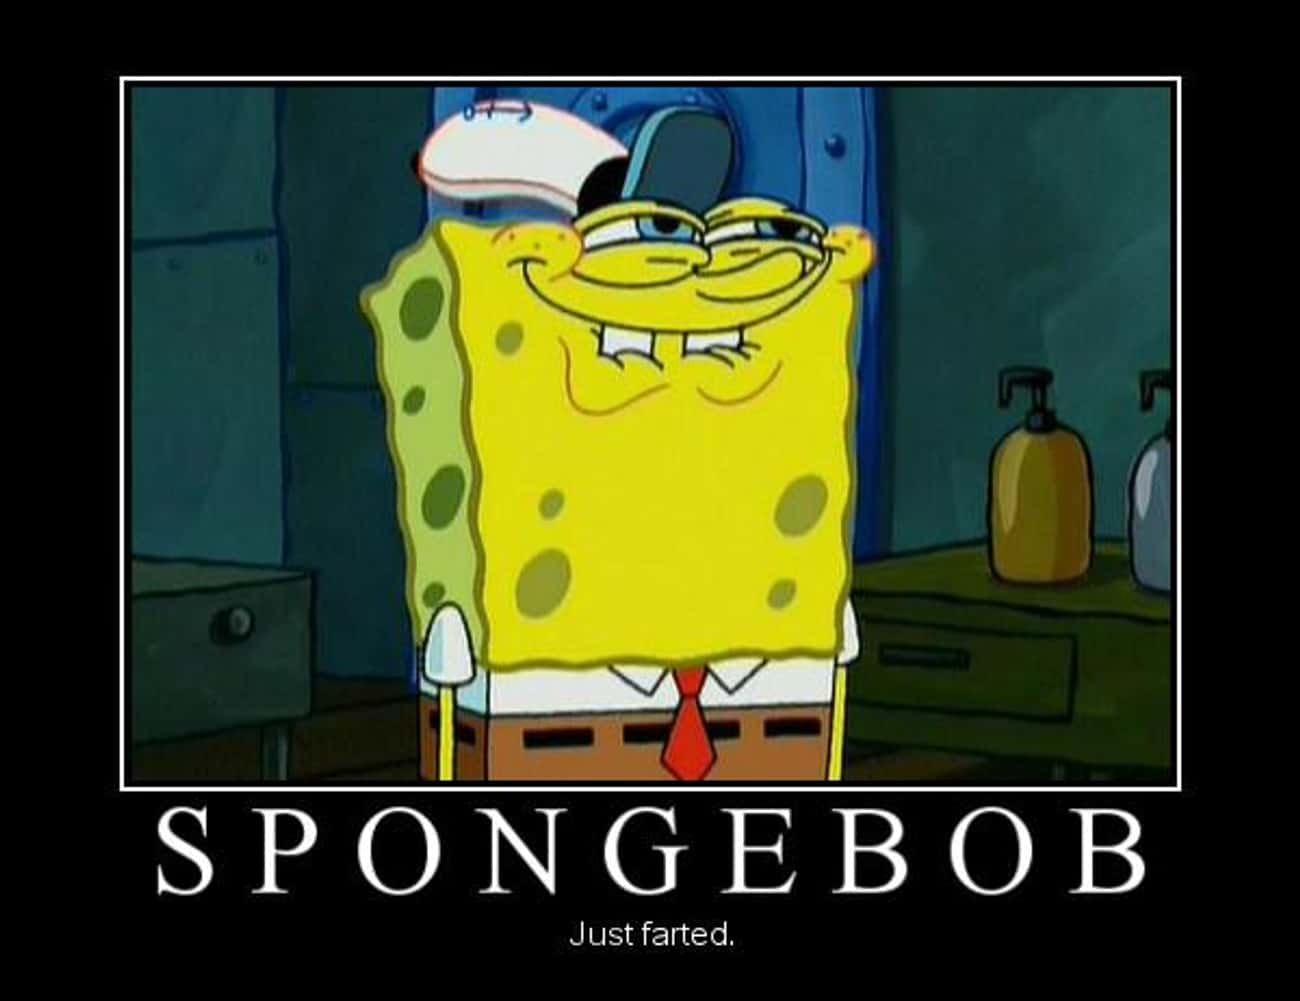 The Best Spongebob Memes & Jokes of All Time